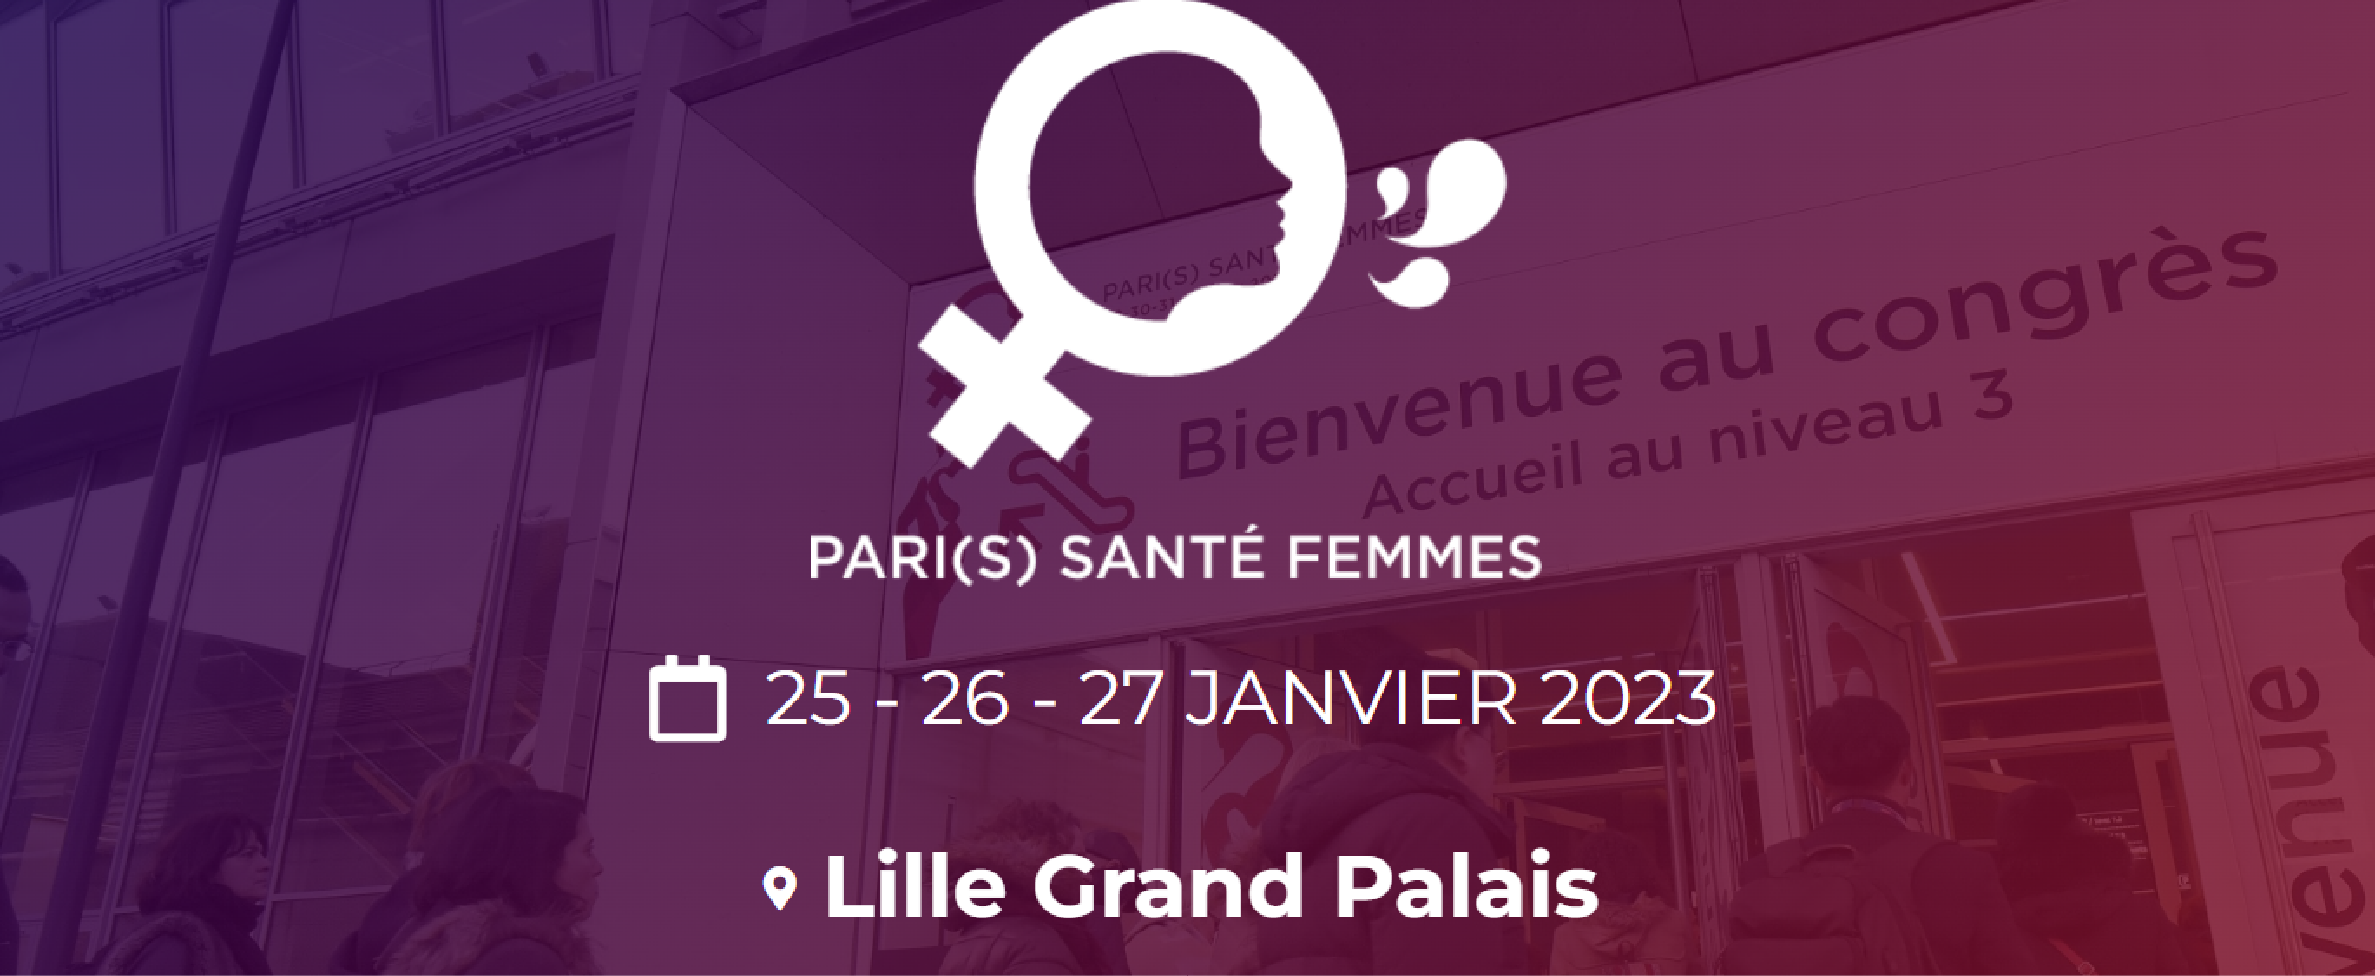 PARIS SANTE FEMMES - PSF 2023